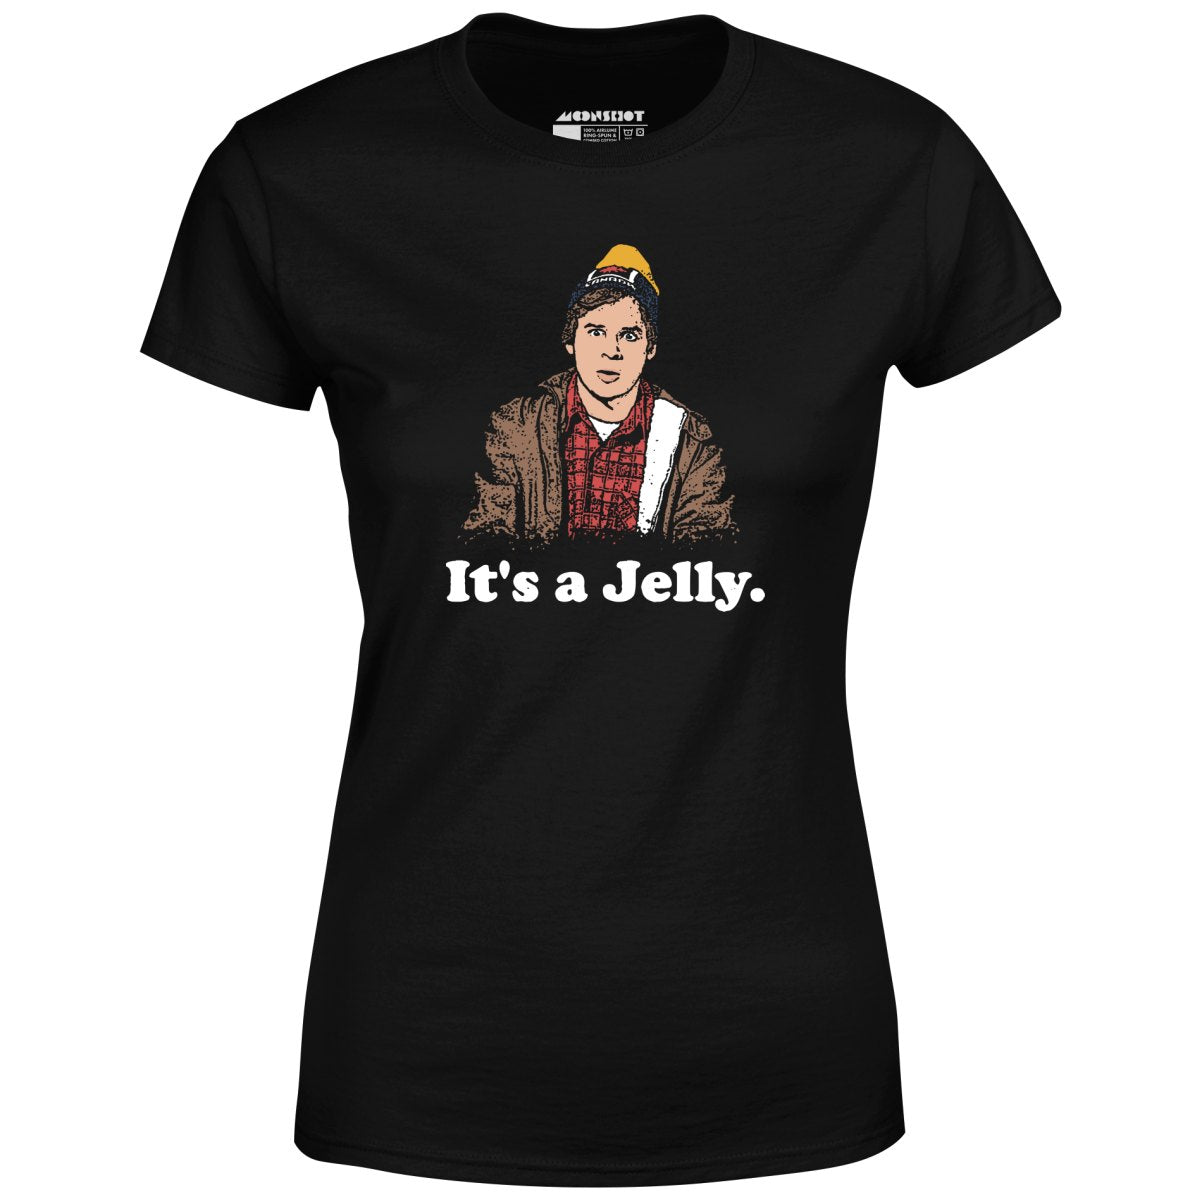 It's a Jelly - Women's T-Shirt